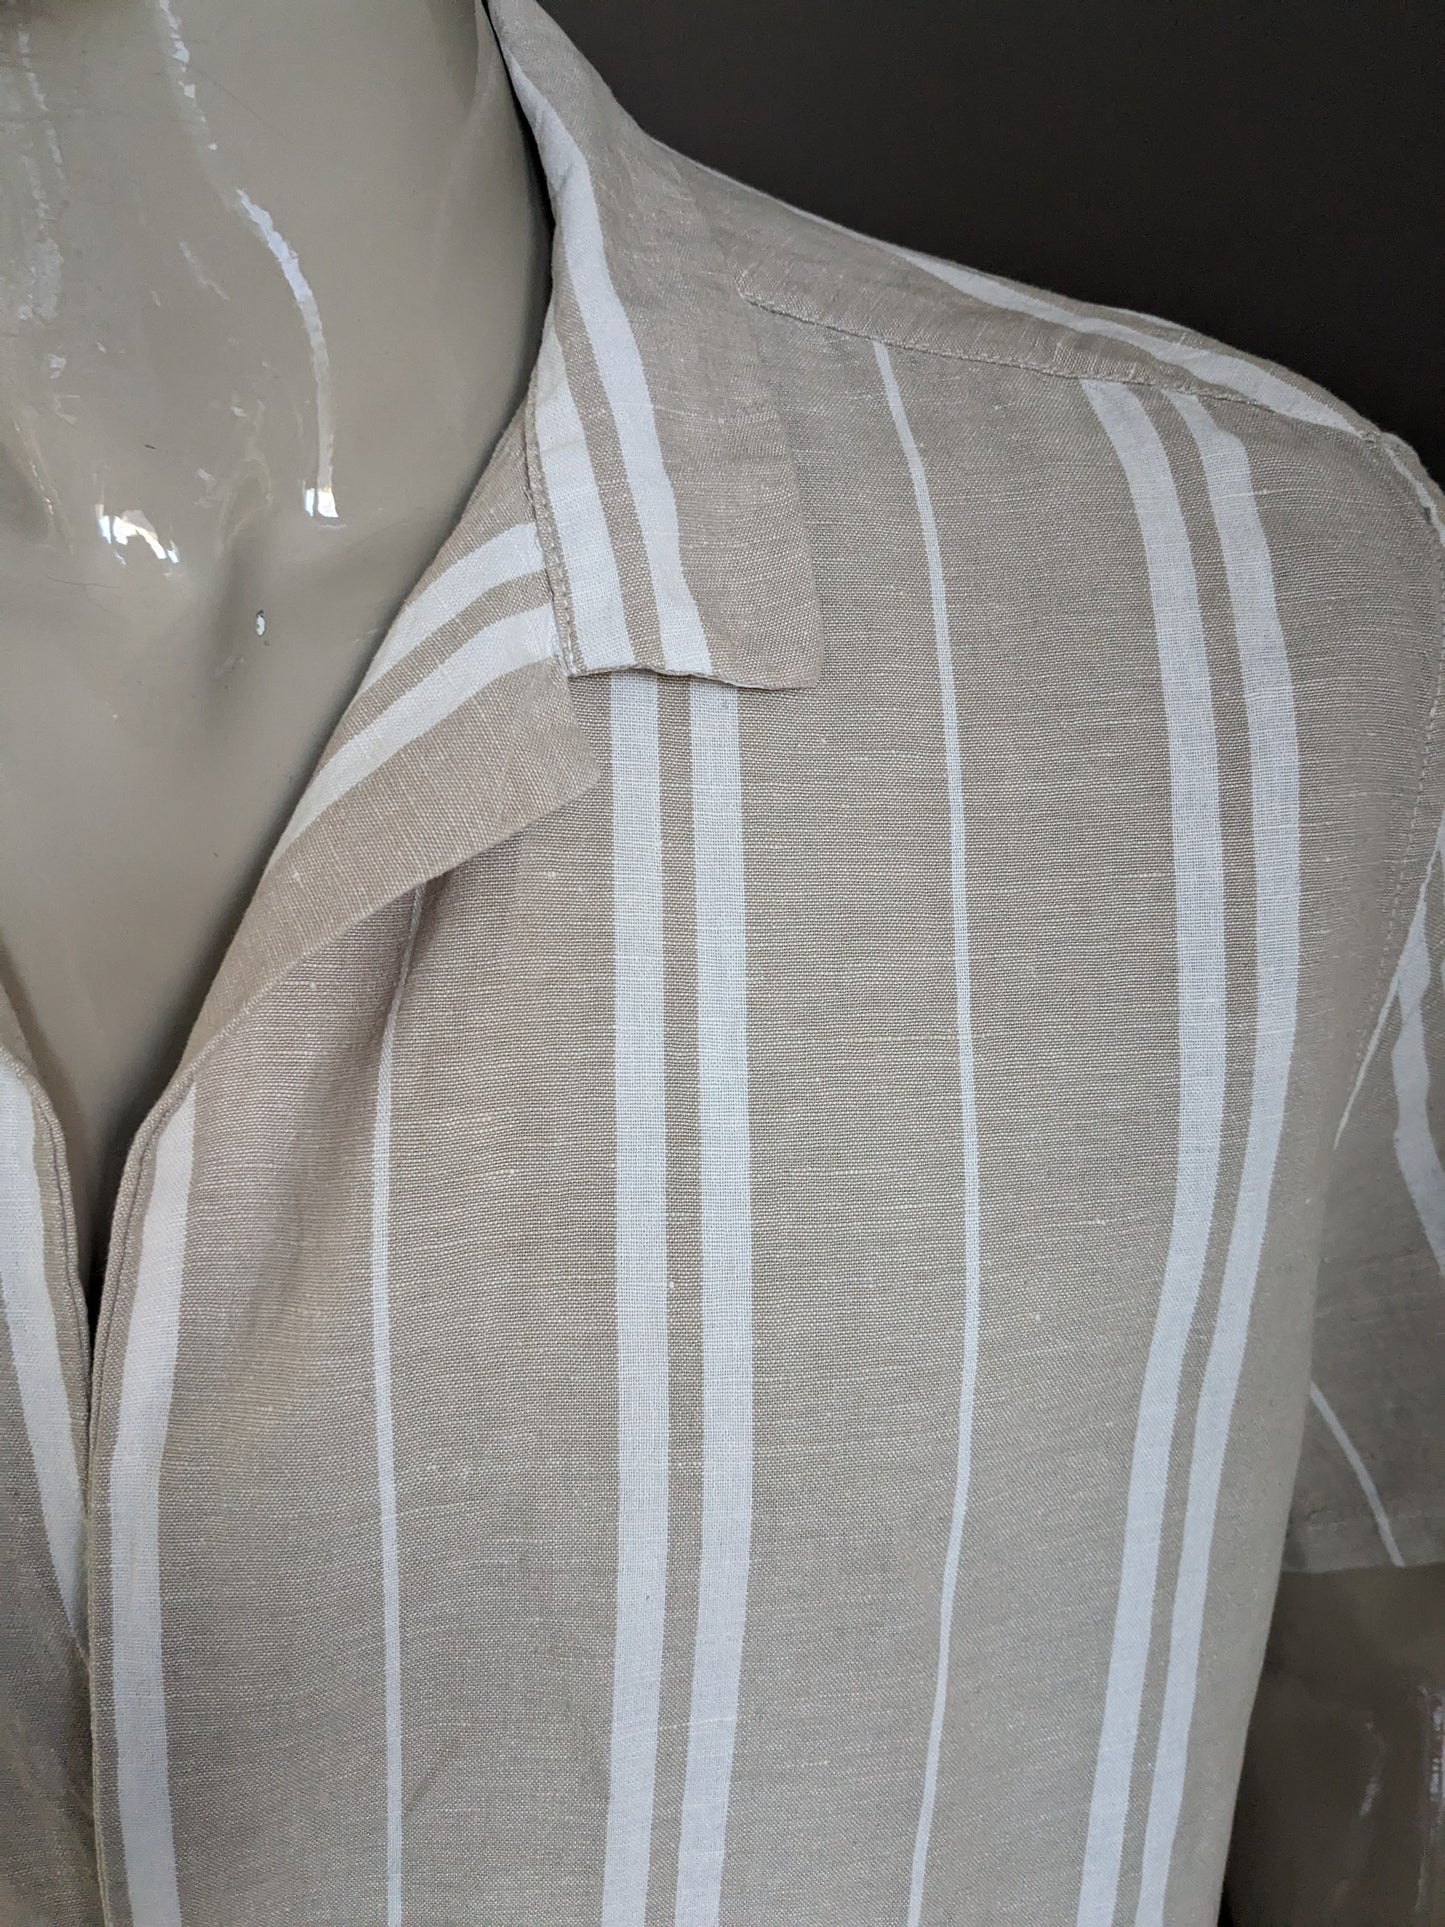 Asos design linen shirt short sleeve with 1 knot. Beige white striped. Size 2XL / XXL. 53% linen.